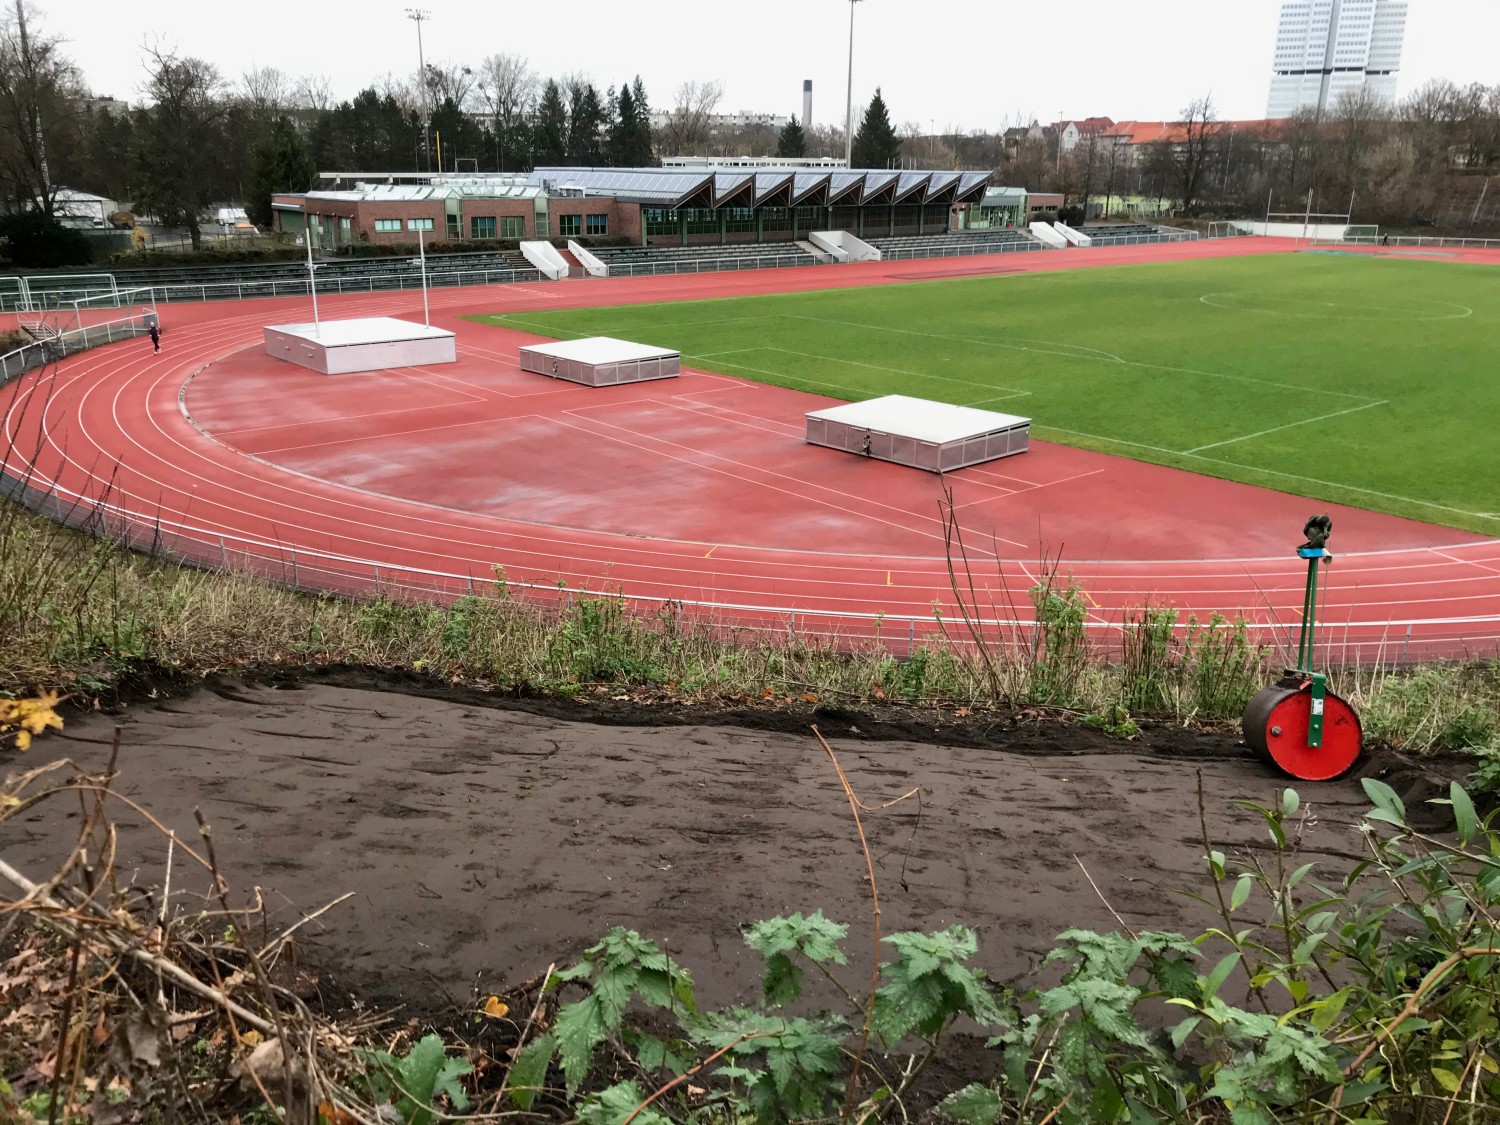 Frisch gewalzte Ansaatfläche auf der Böschung mit Walze, im Hintergrund ist der südliche Teil des Stadion Wilmersdorf zu sehen.